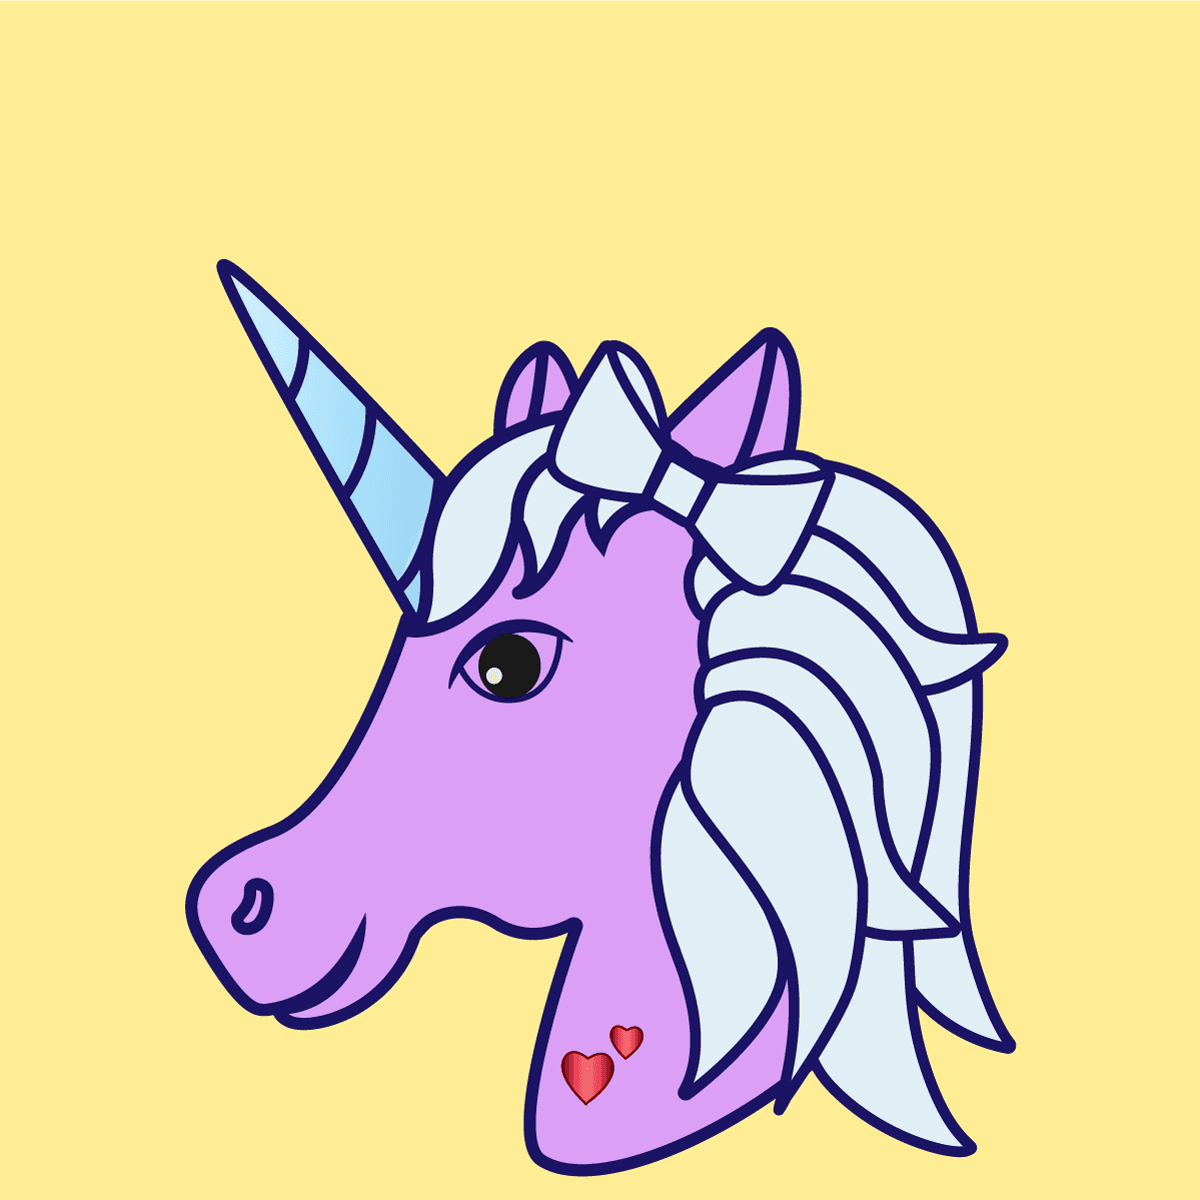 Uncanny Unicorn #1008